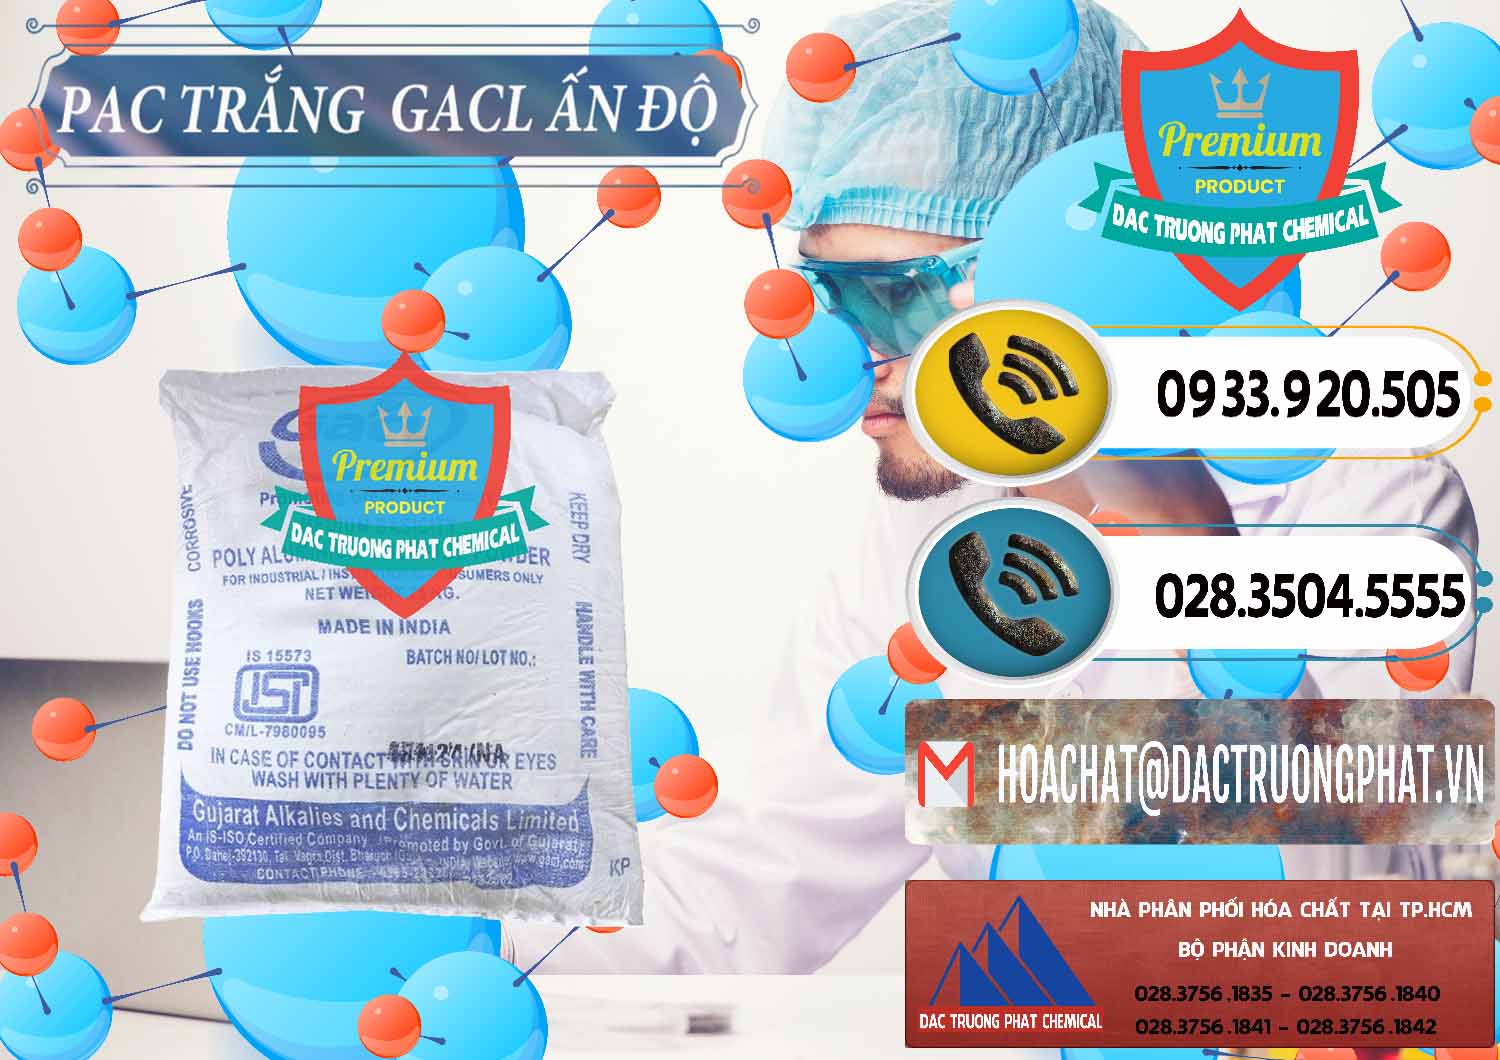 Đơn vị chuyên kinh doanh ( bán ) PAC - Polyaluminium Chloride Trắng GACL Ấn Độ India - 0266 - Công ty chuyên phân phối & cung ứng hóa chất tại TP.HCM - hoachatdetnhuom.vn